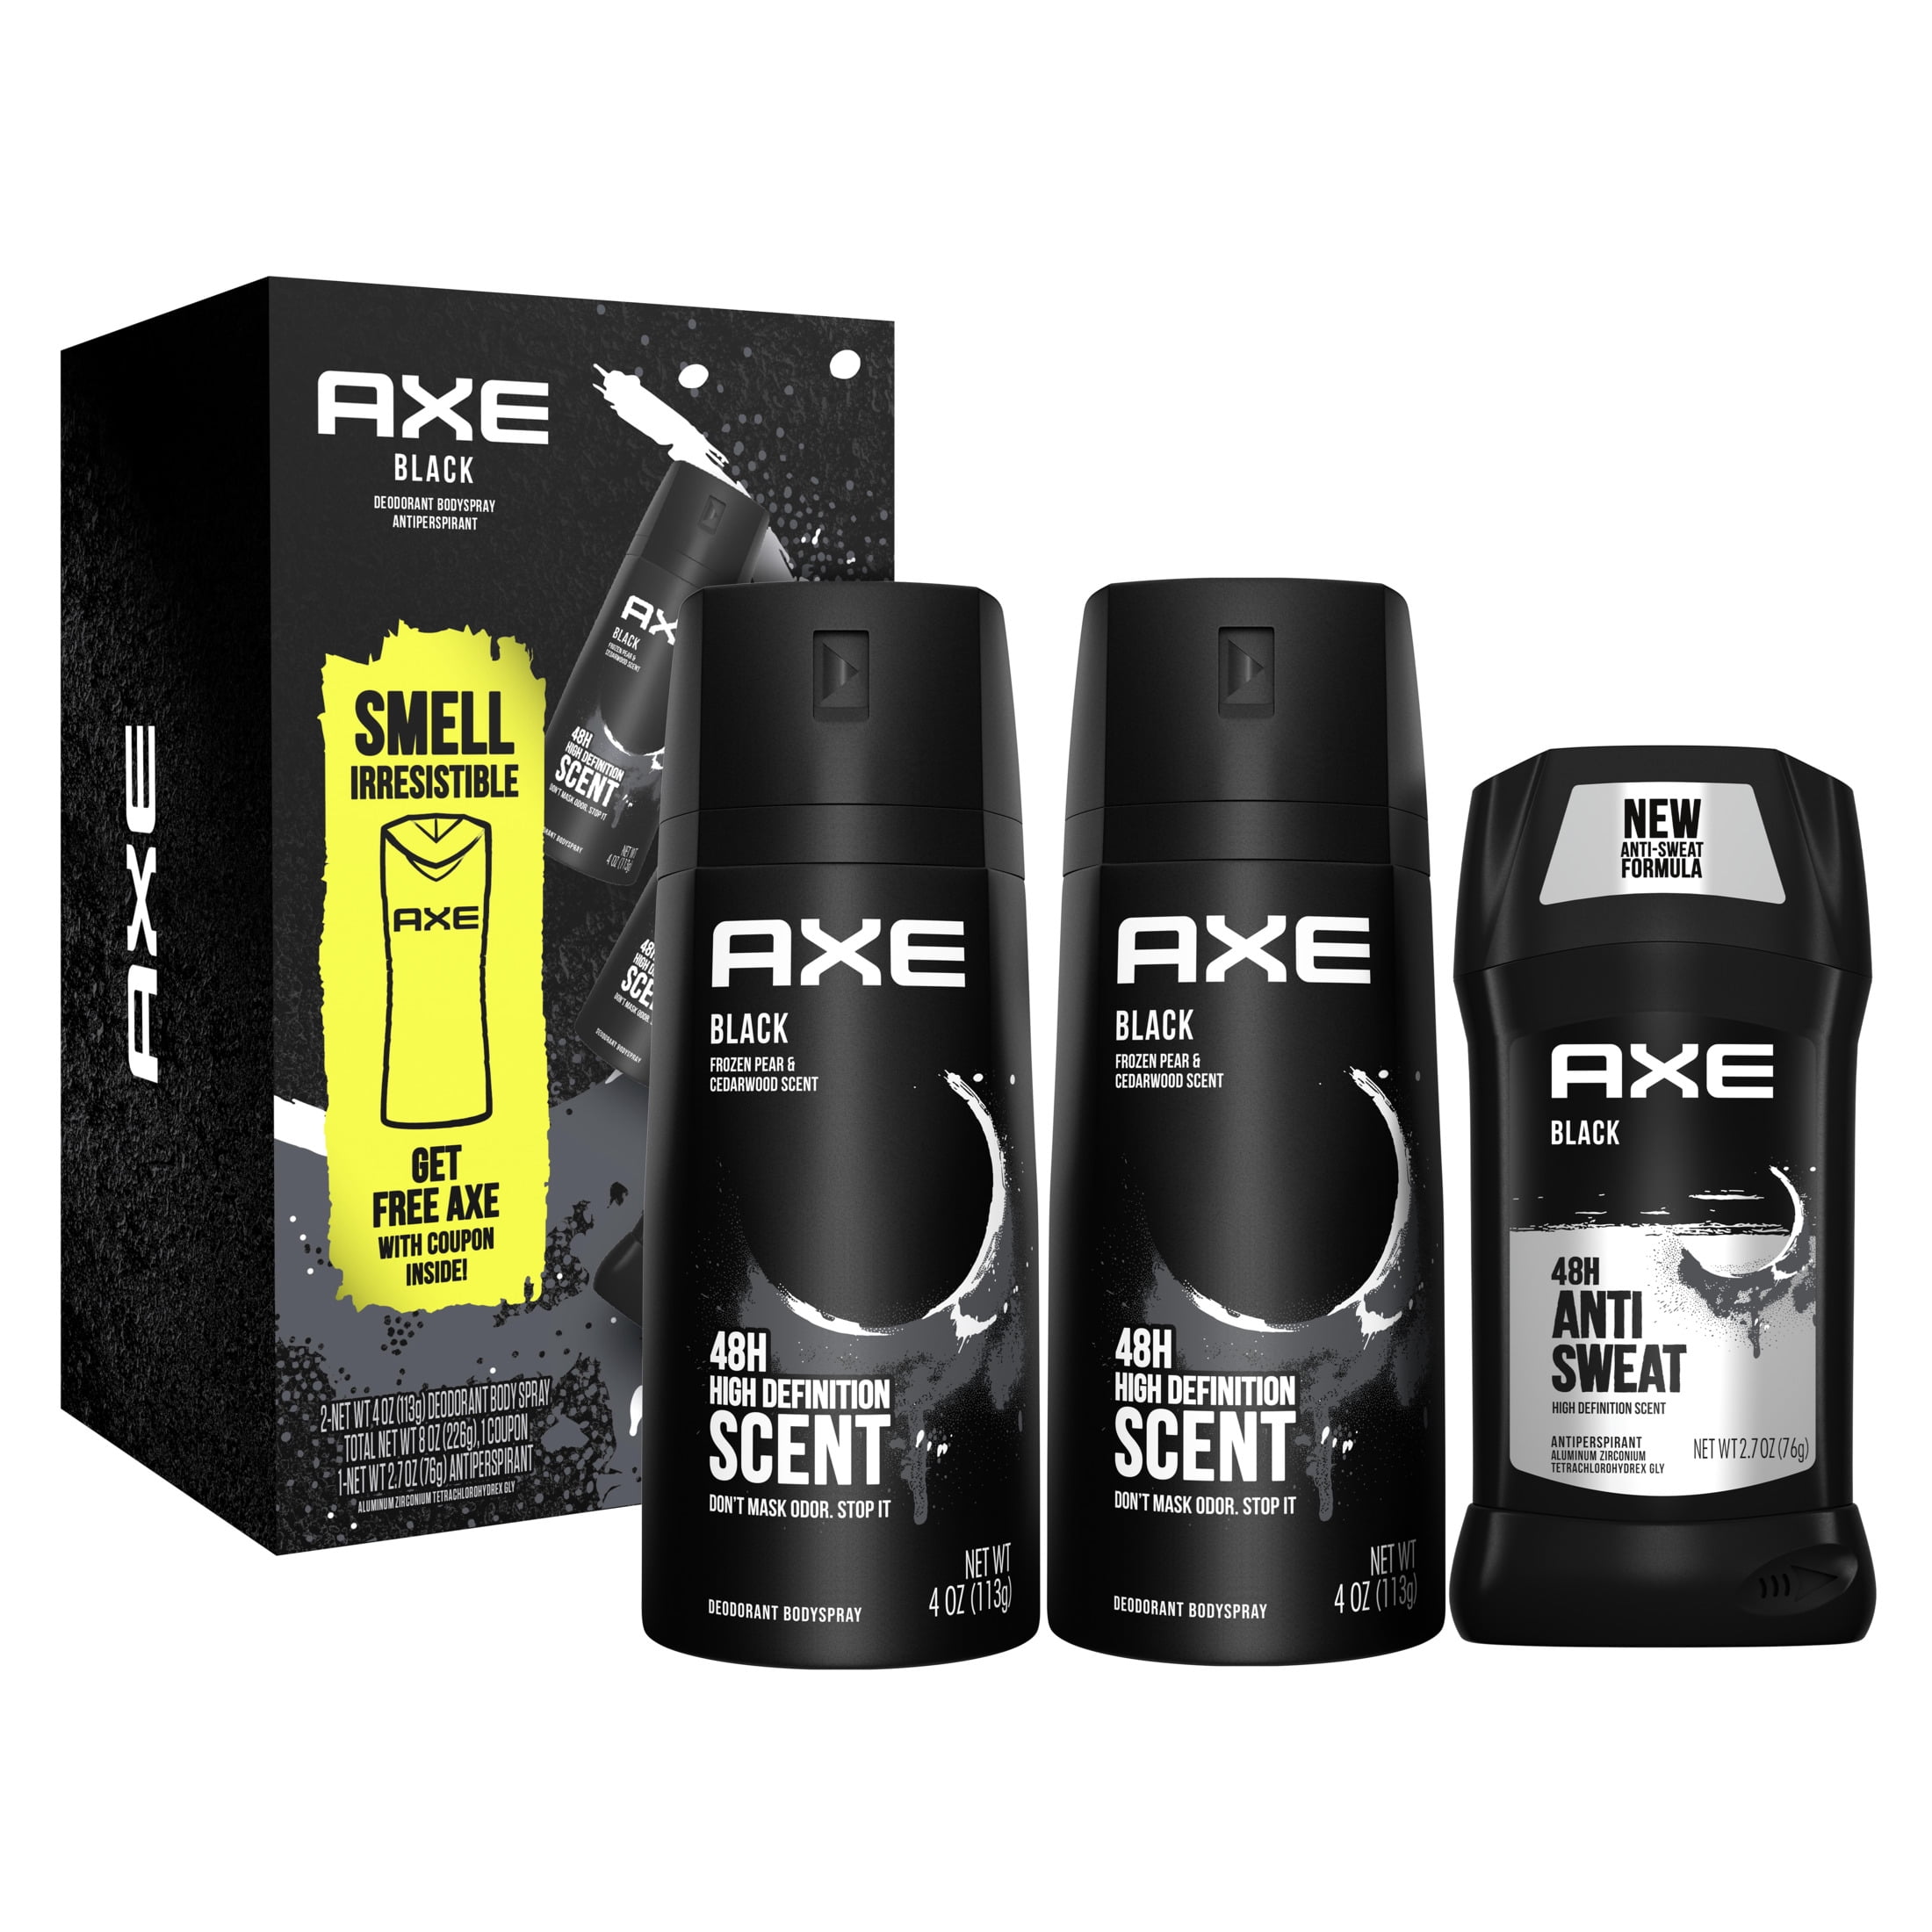 21 VALUE) AXE Black Deodorant Gift Pack for Men, 3 Count